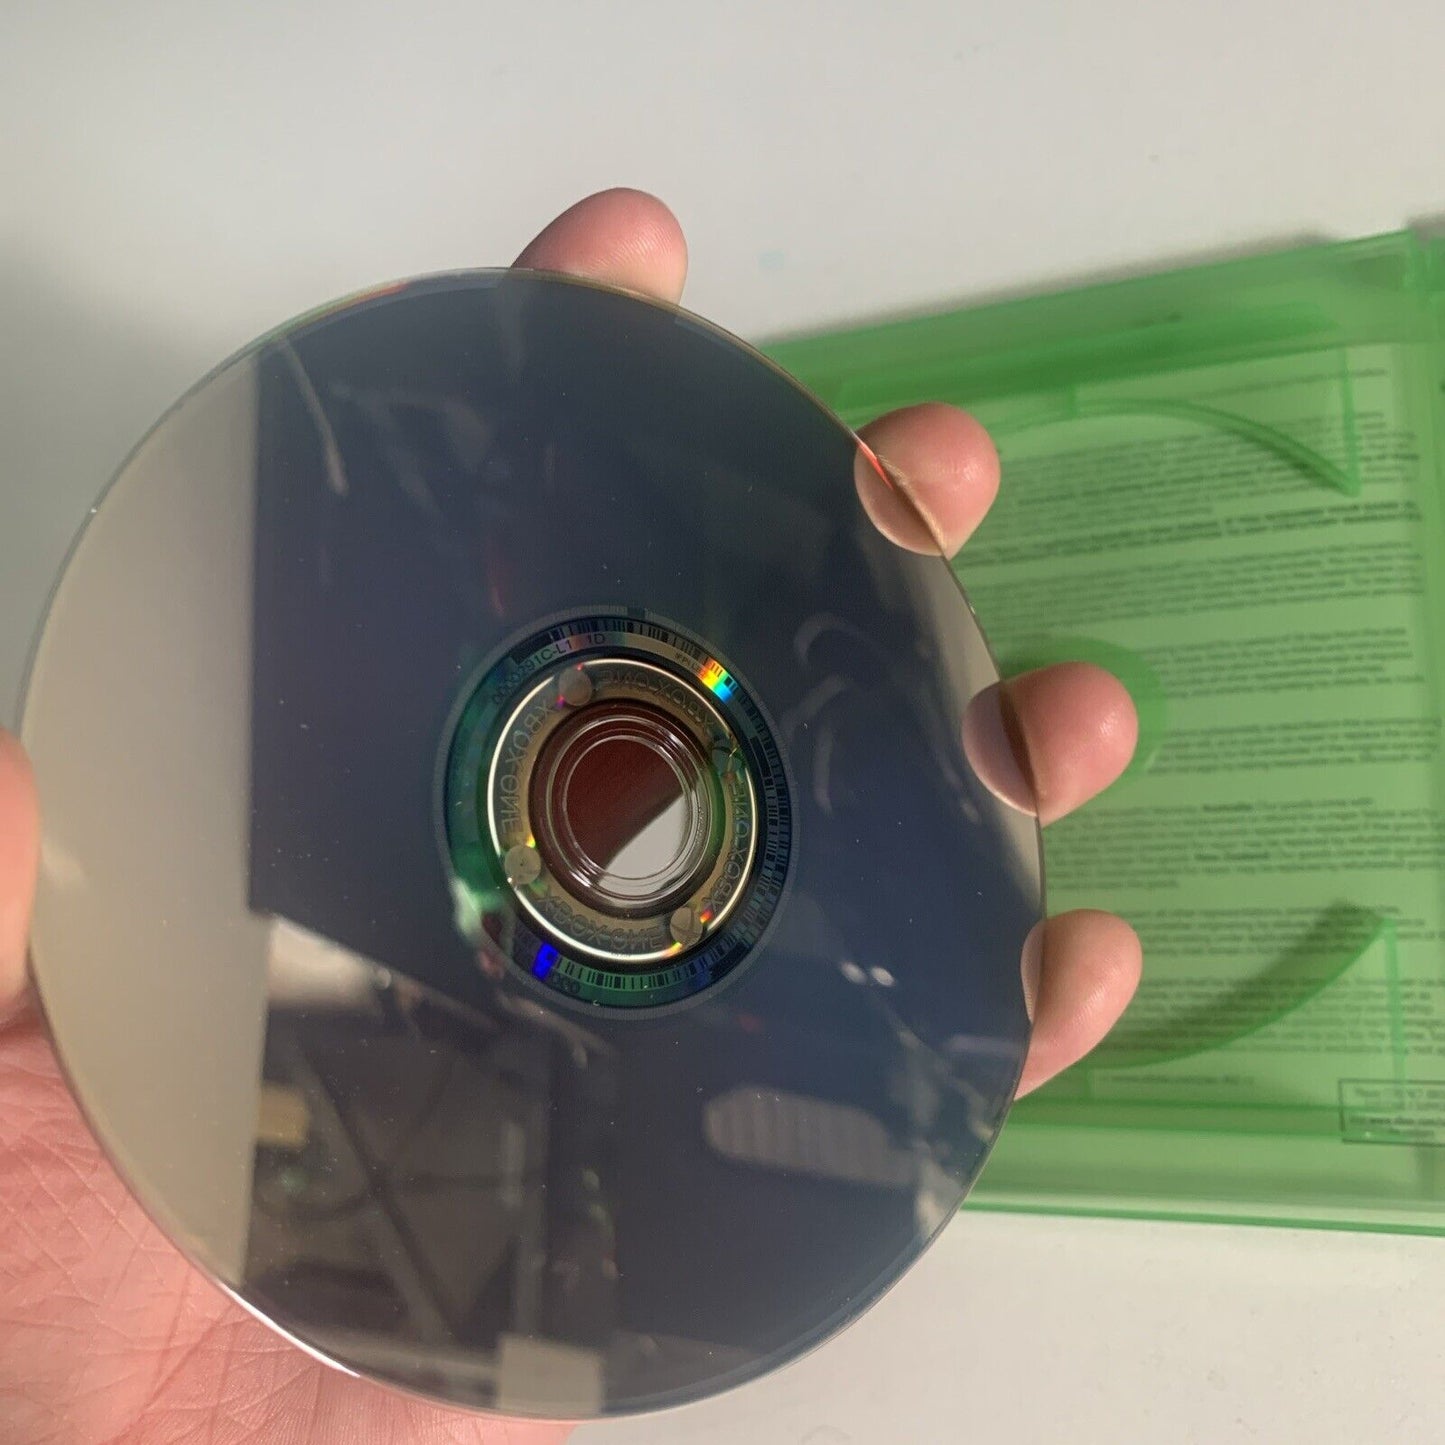 Forza Horizon 2 Xbox One Game 10 Year Anniversary Edition